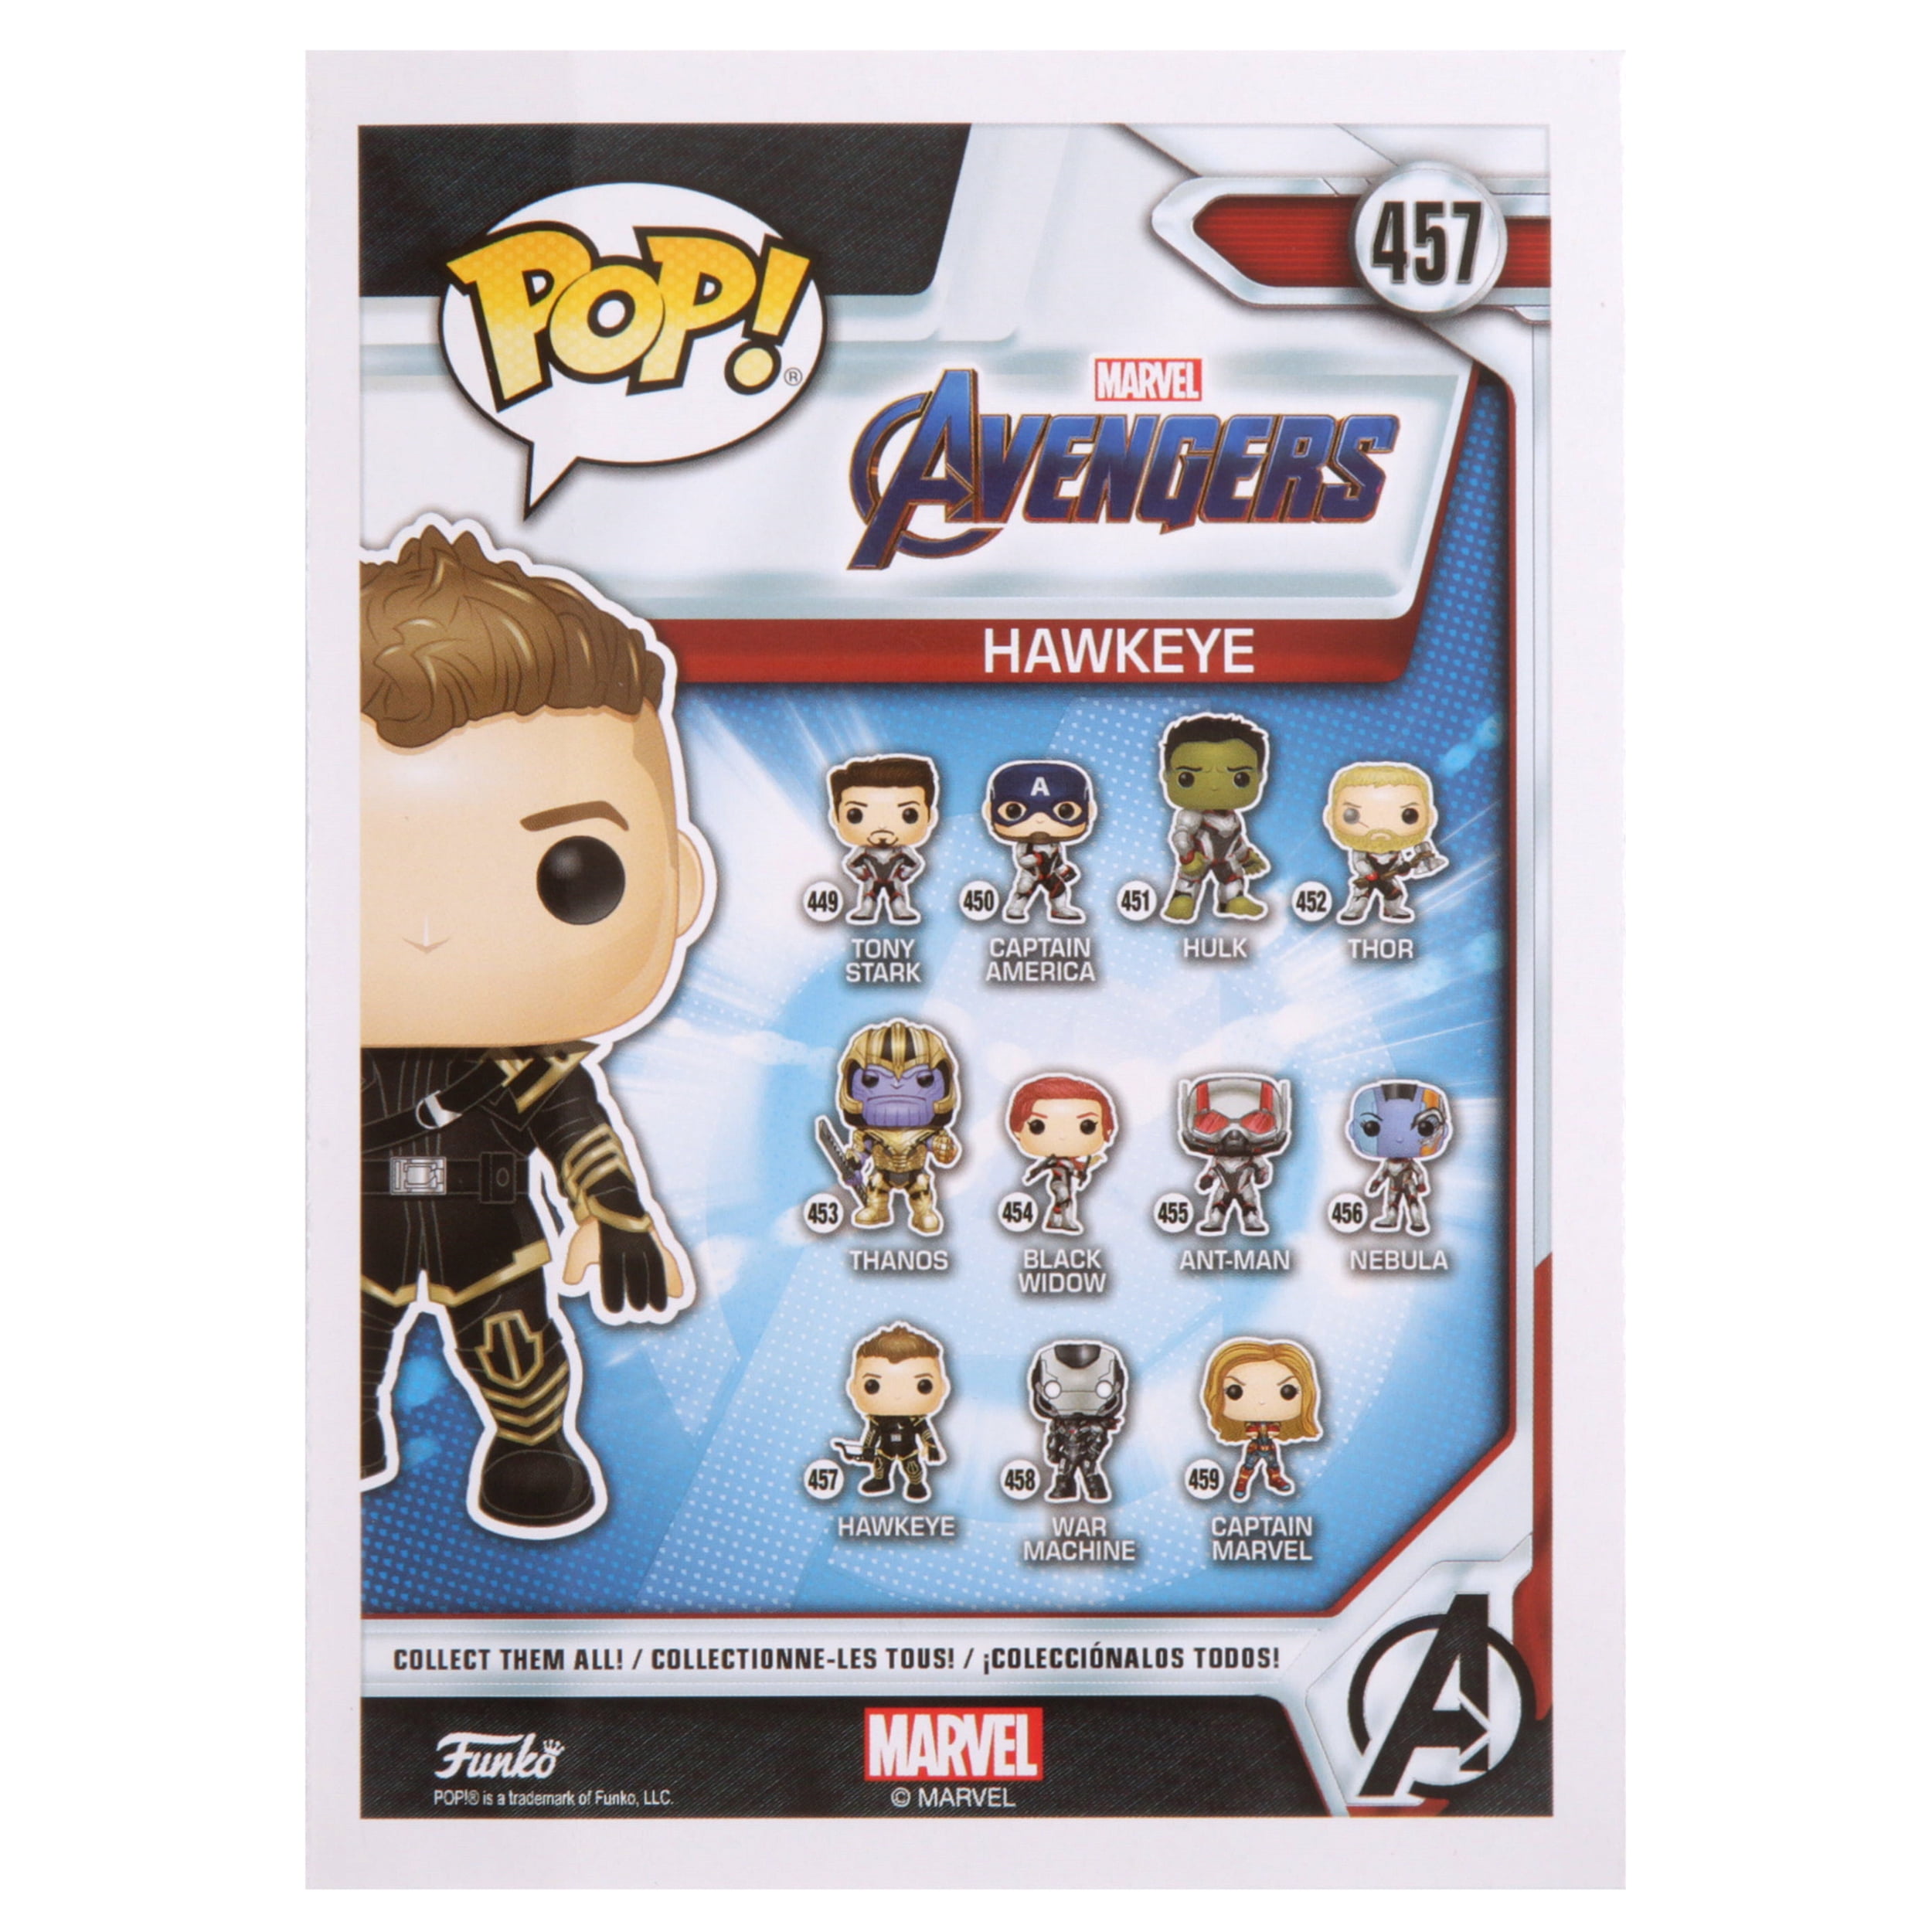 Funko Pop Marvel Avengers Hawkeye 457-36669 